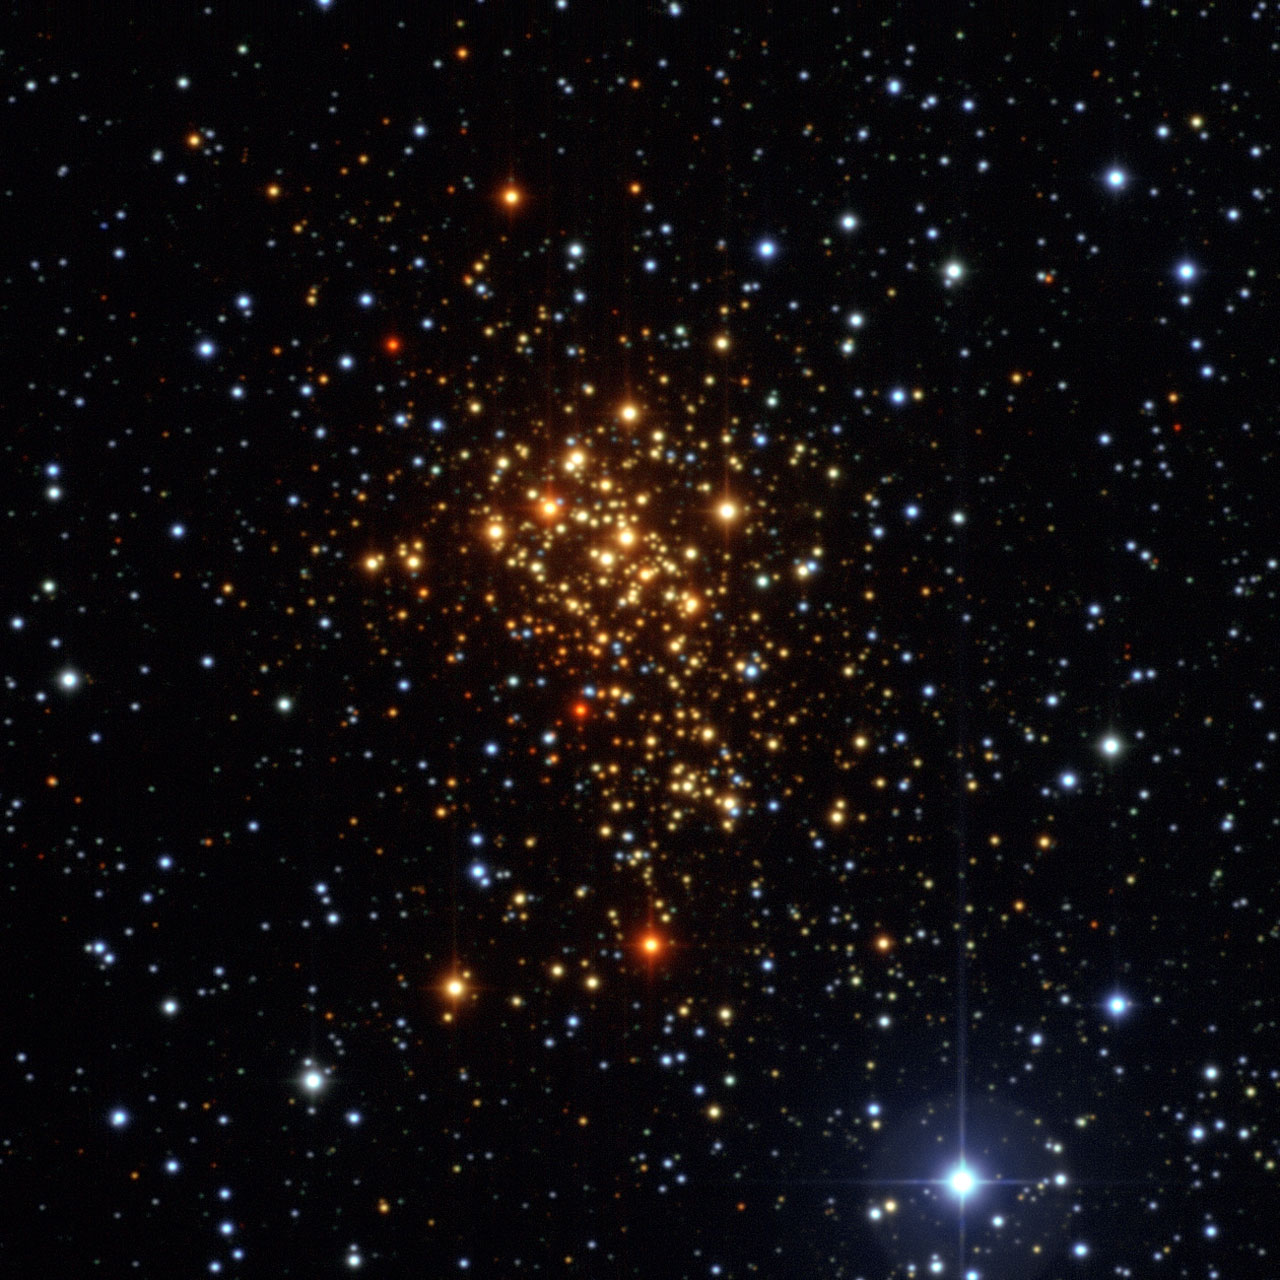 Esta imagem do enxame estelar jovem Westerlund 1 foi obtida com o instrumento Wide Field Imager montado no telescópio MPG/ESO de 2,2 metros, no Observatório de La Silla do ESO, no Chile. Apesar da maioria das estrelas do enxame serem supergigantes quentes azuis, na imagem aparecem avermelhadas uma vez que as estamos a observar através de poeira e gás interestelar.